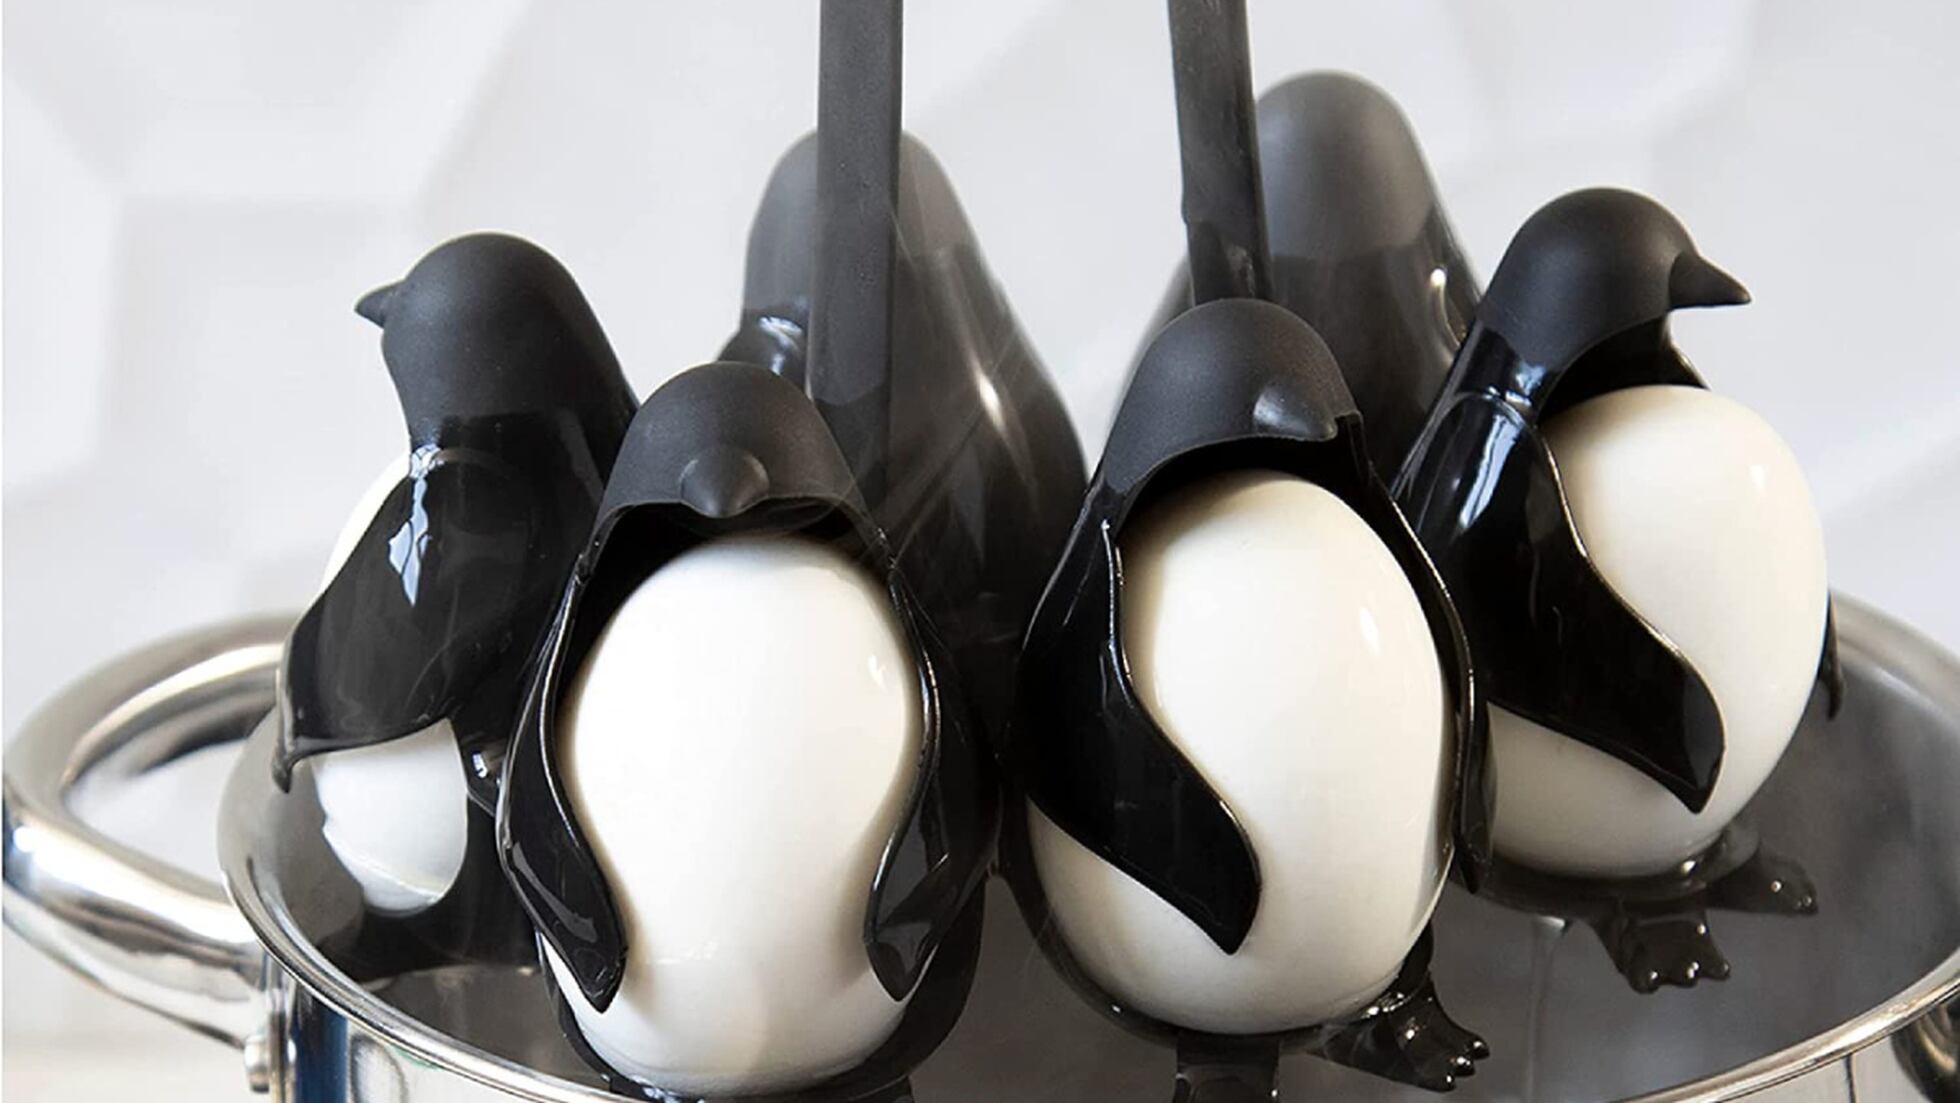 Huevera y hervidor para 6 huevos con divertido diseño de pingüinos.